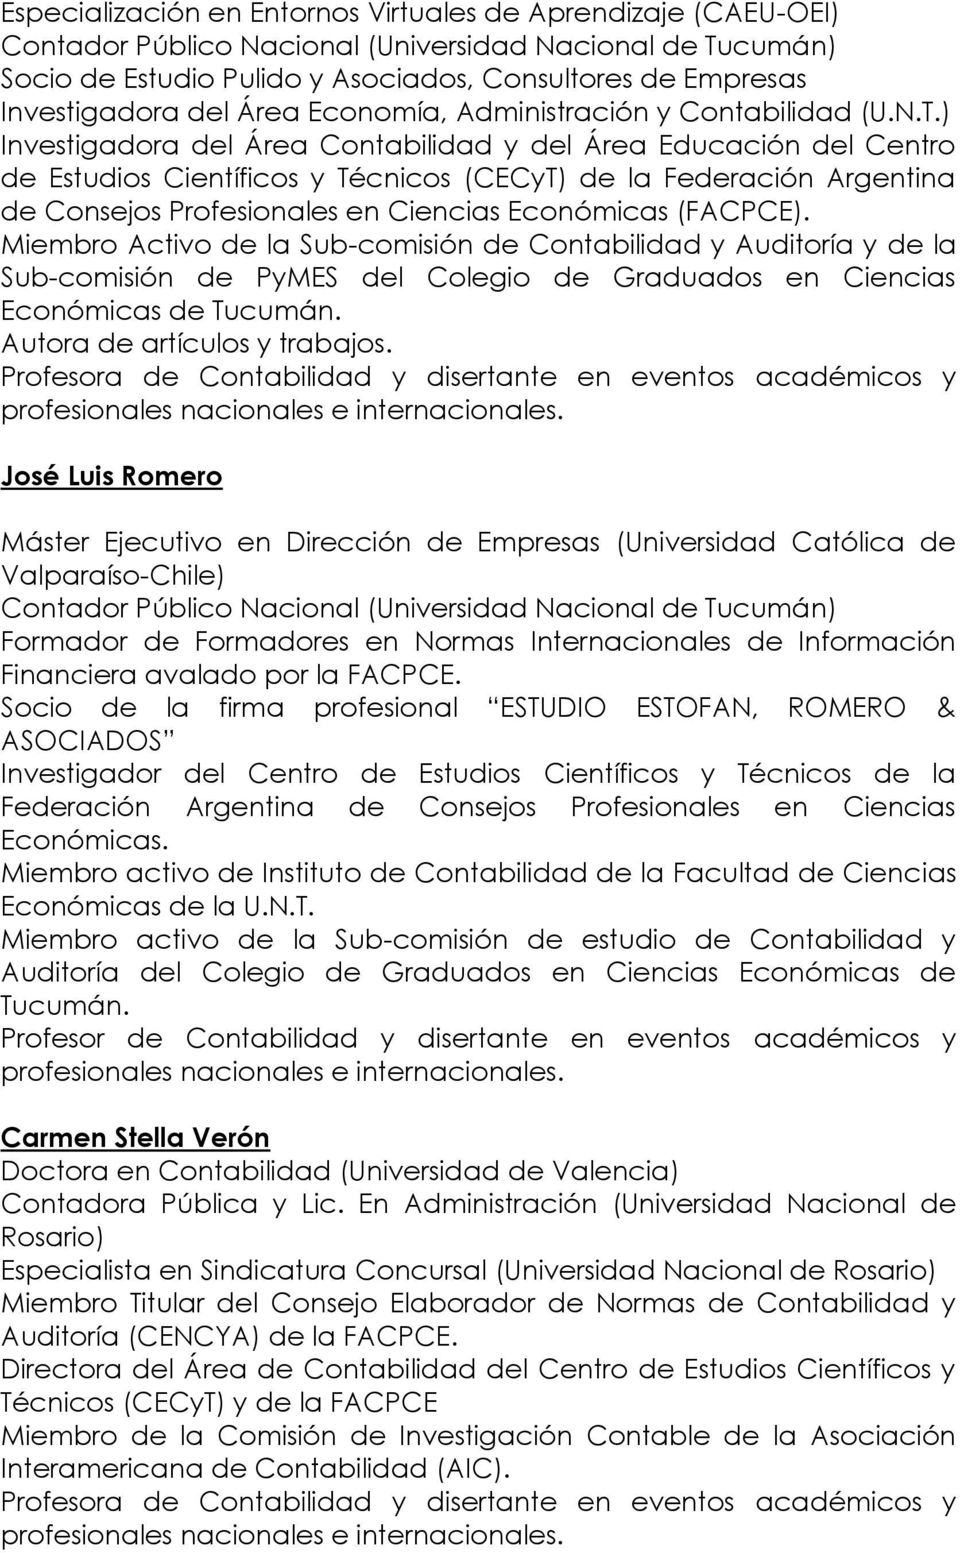 ) Investigadora del Área Contabilidad y del Área Educación del Centro de Estudios Científicos y Técnicos (CECyT) de la Federación Argentina de Consejos Profesionales en Ciencias Económicas (FACPCE).